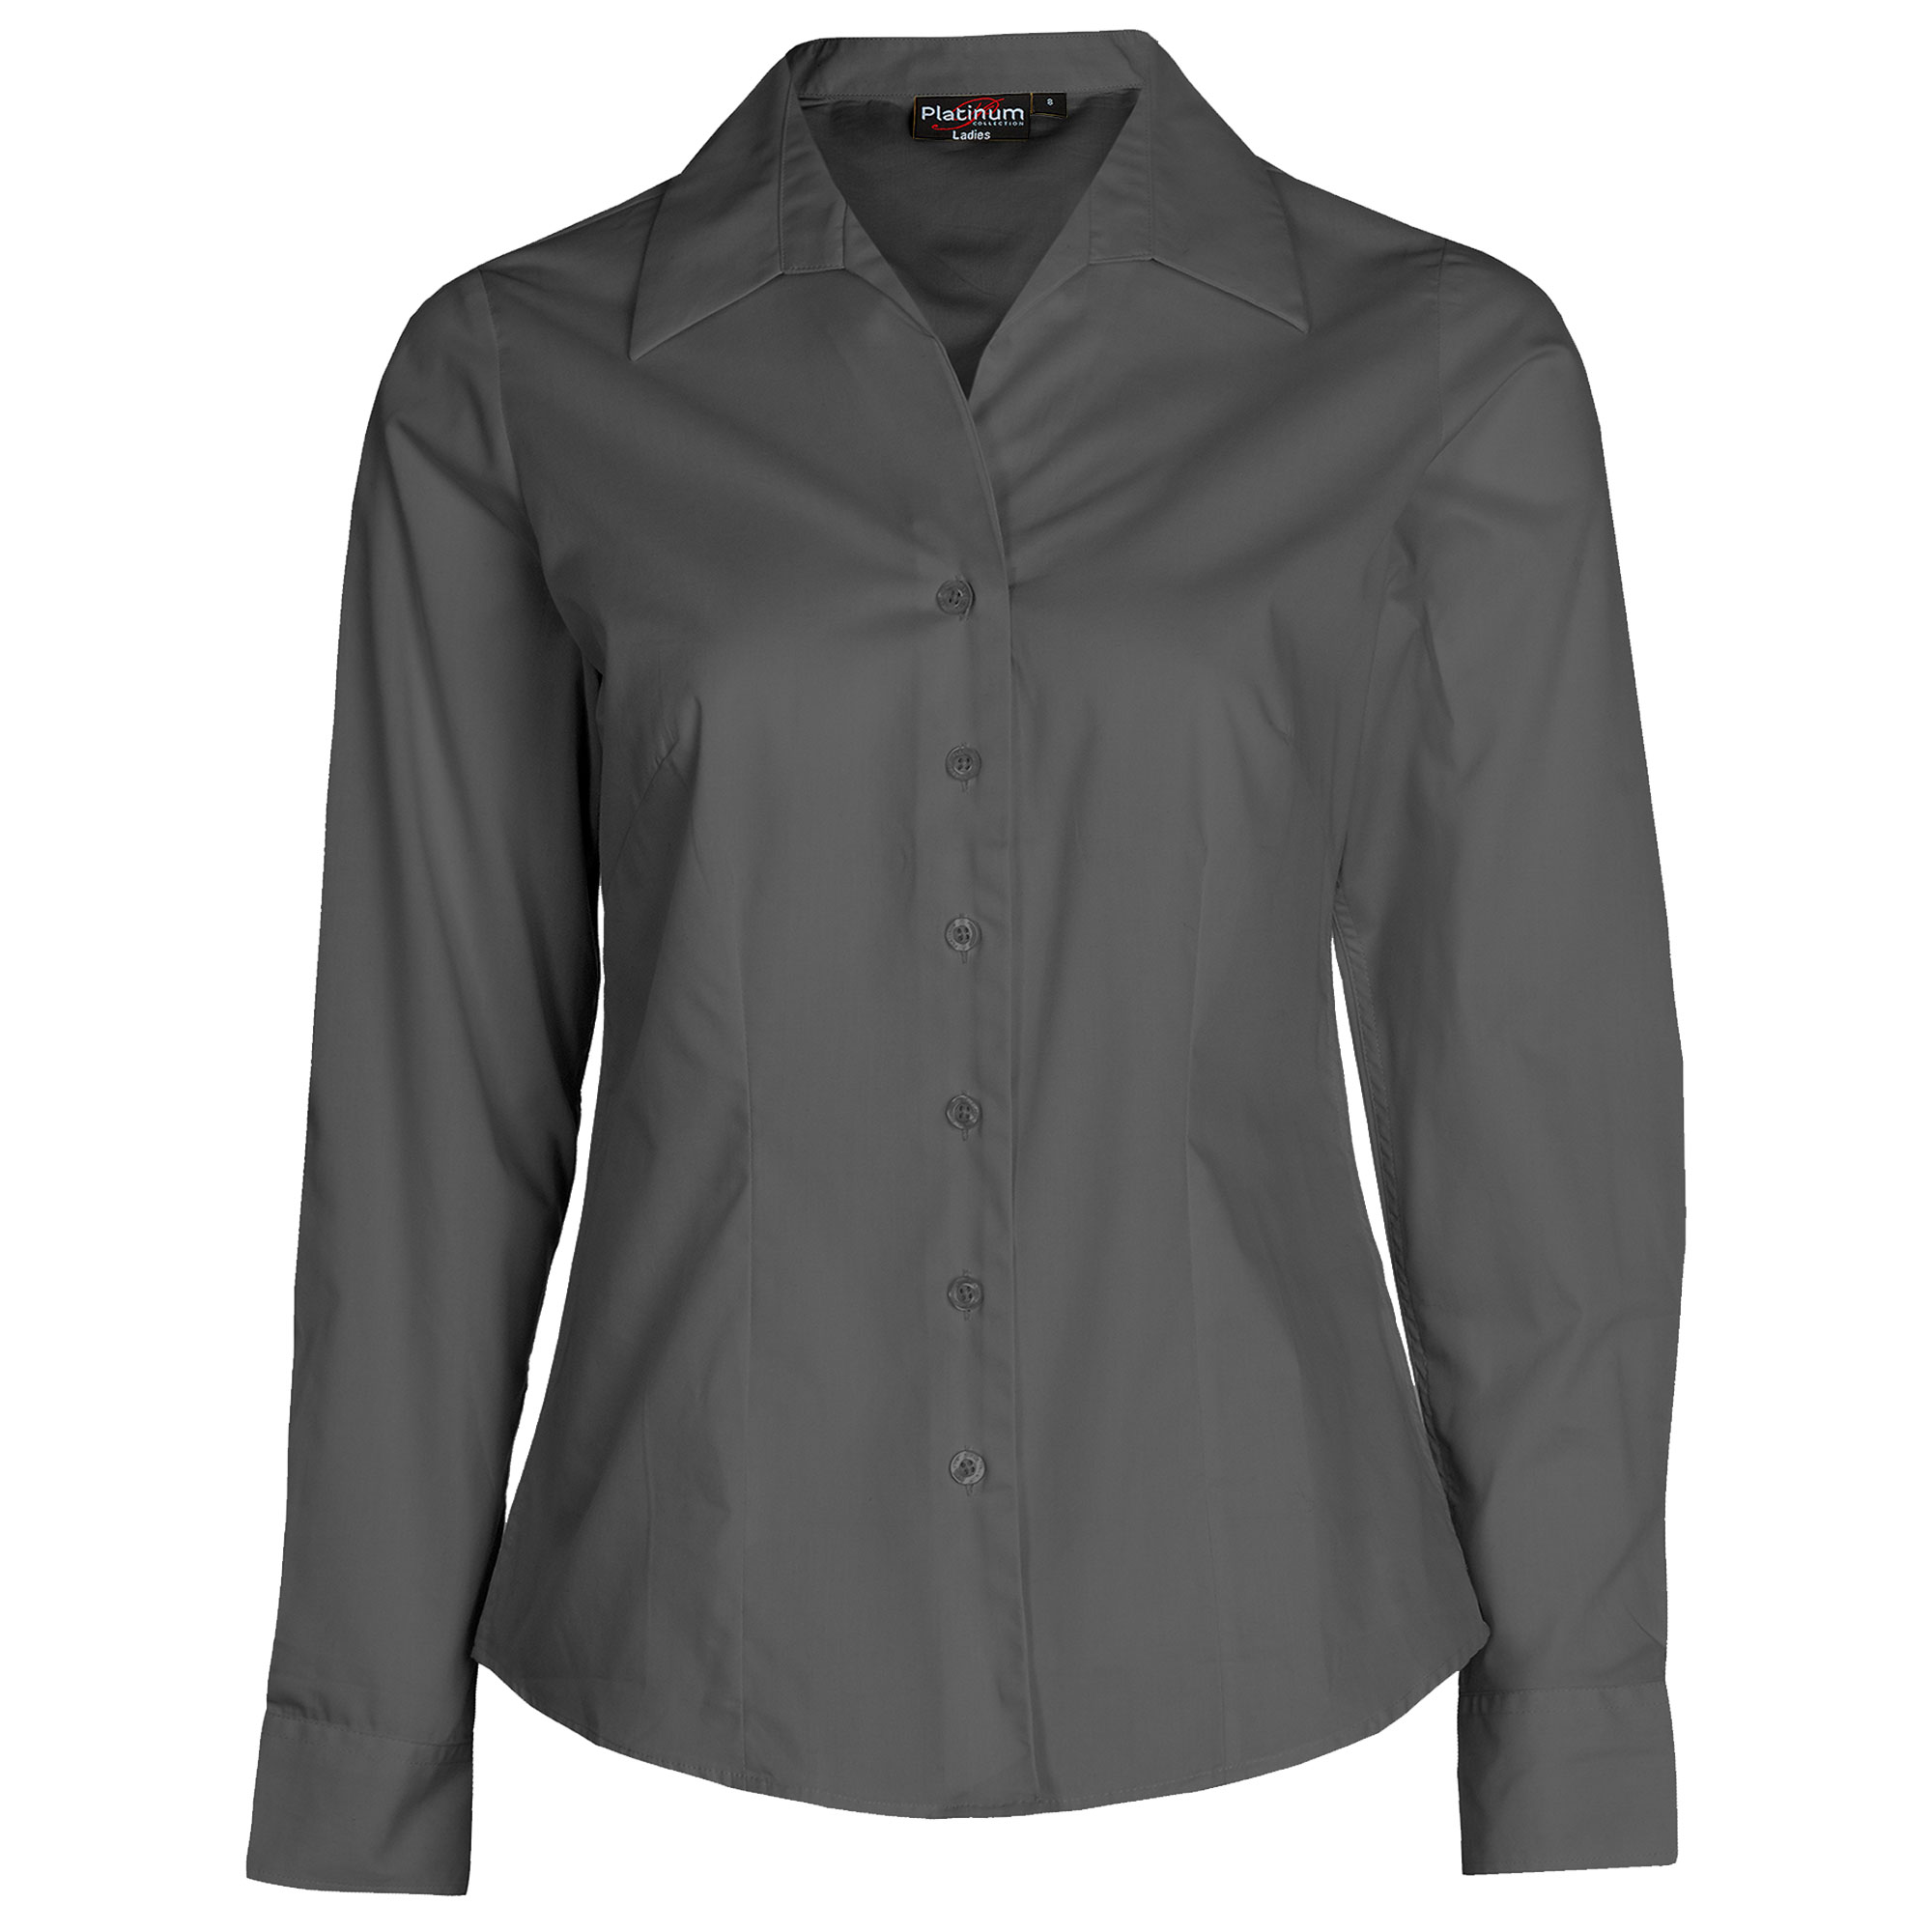 Women Lady Lapel Collar Short/Long Sleeve Button Shirts Office Blouse -  Walmart.com